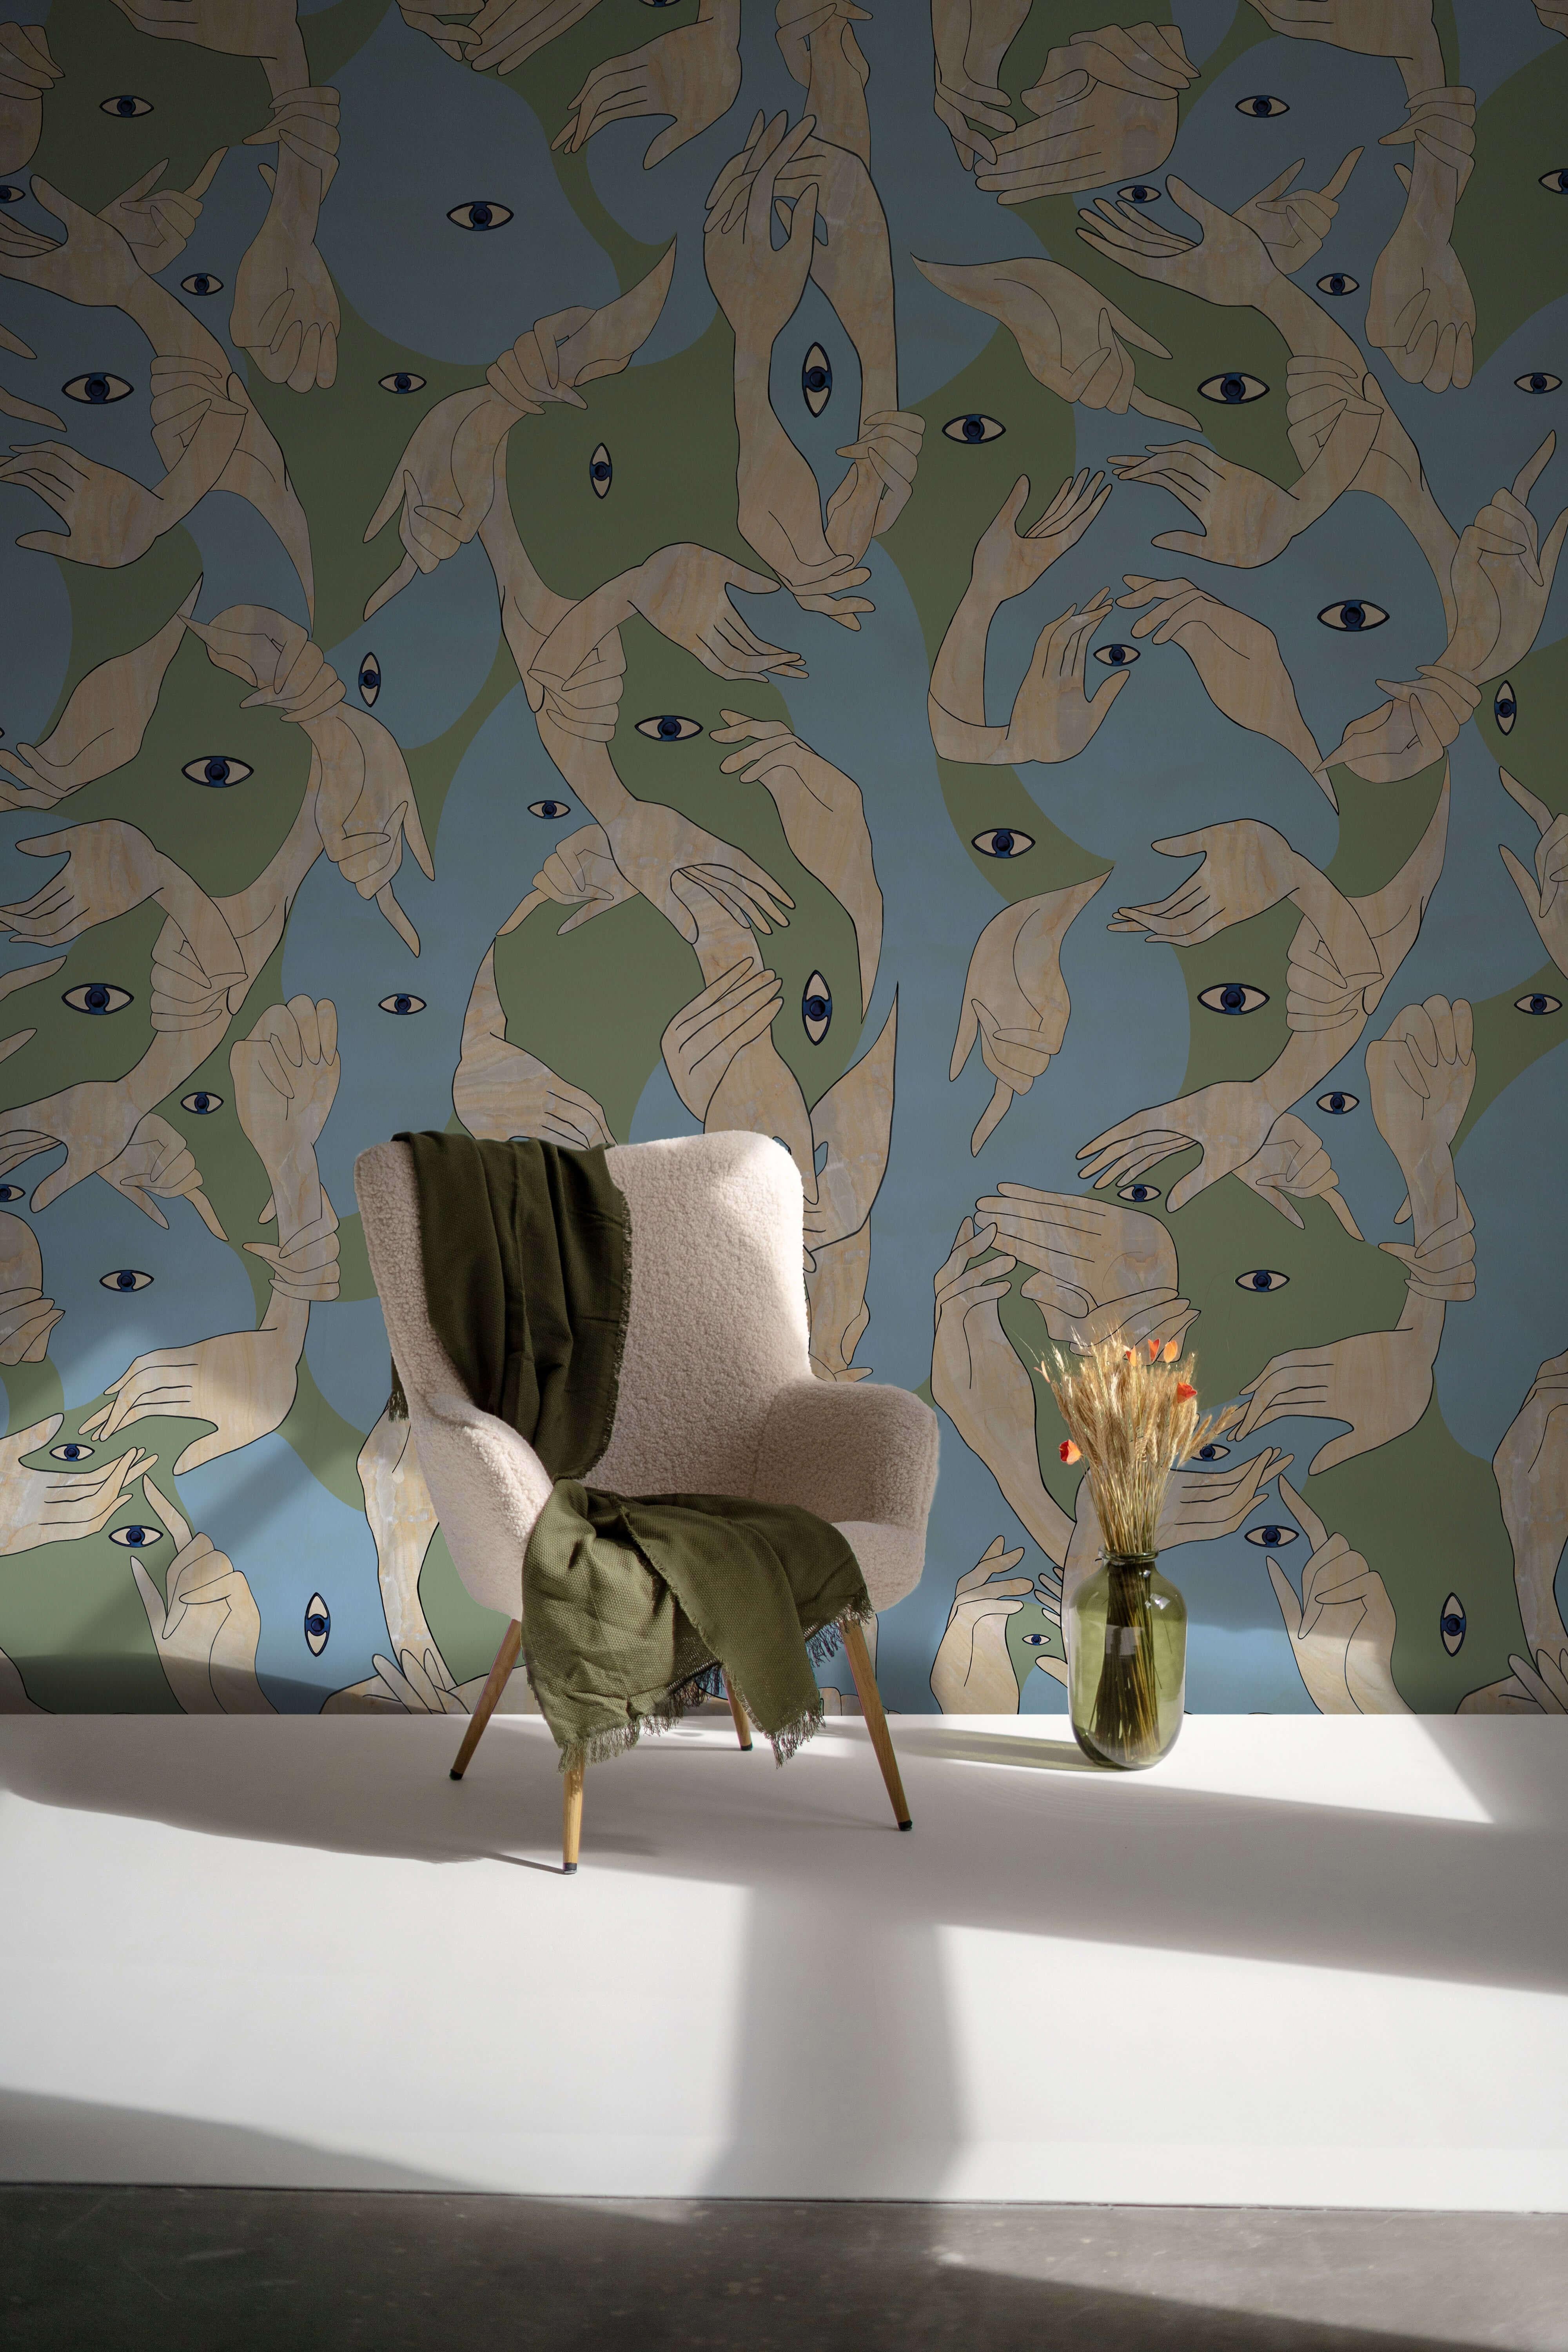 Uno, Nessuno Camouflage Chiaro Wallpaper, Racconti Collection In New Condition For Sale In Firenze, IT